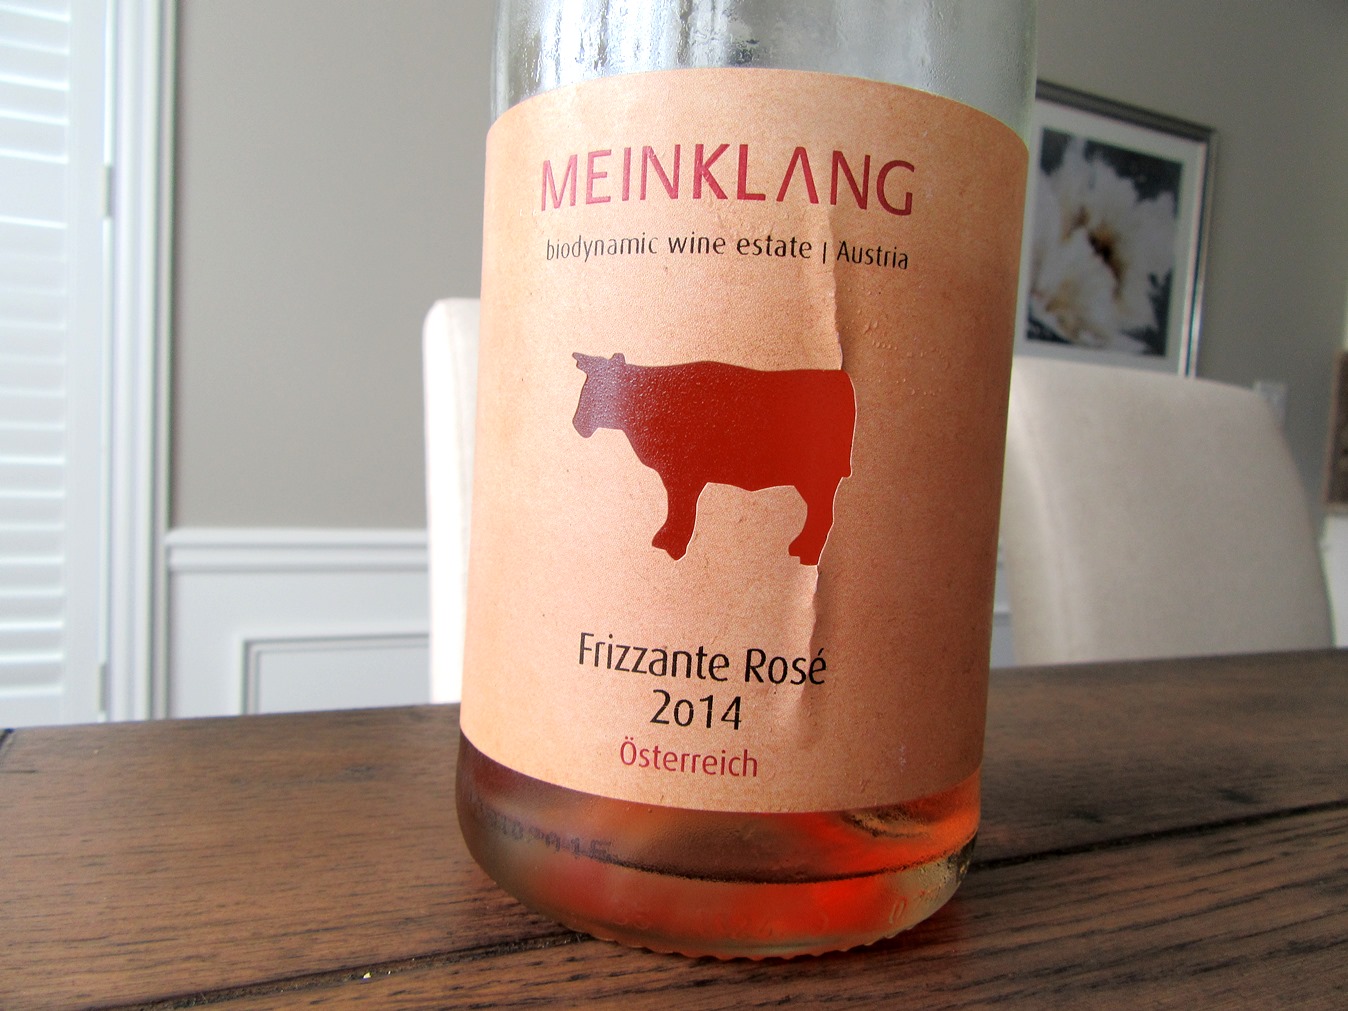 Meinklang, Frizzante Rosé 2014, Österreich, Austria, Wine Casual